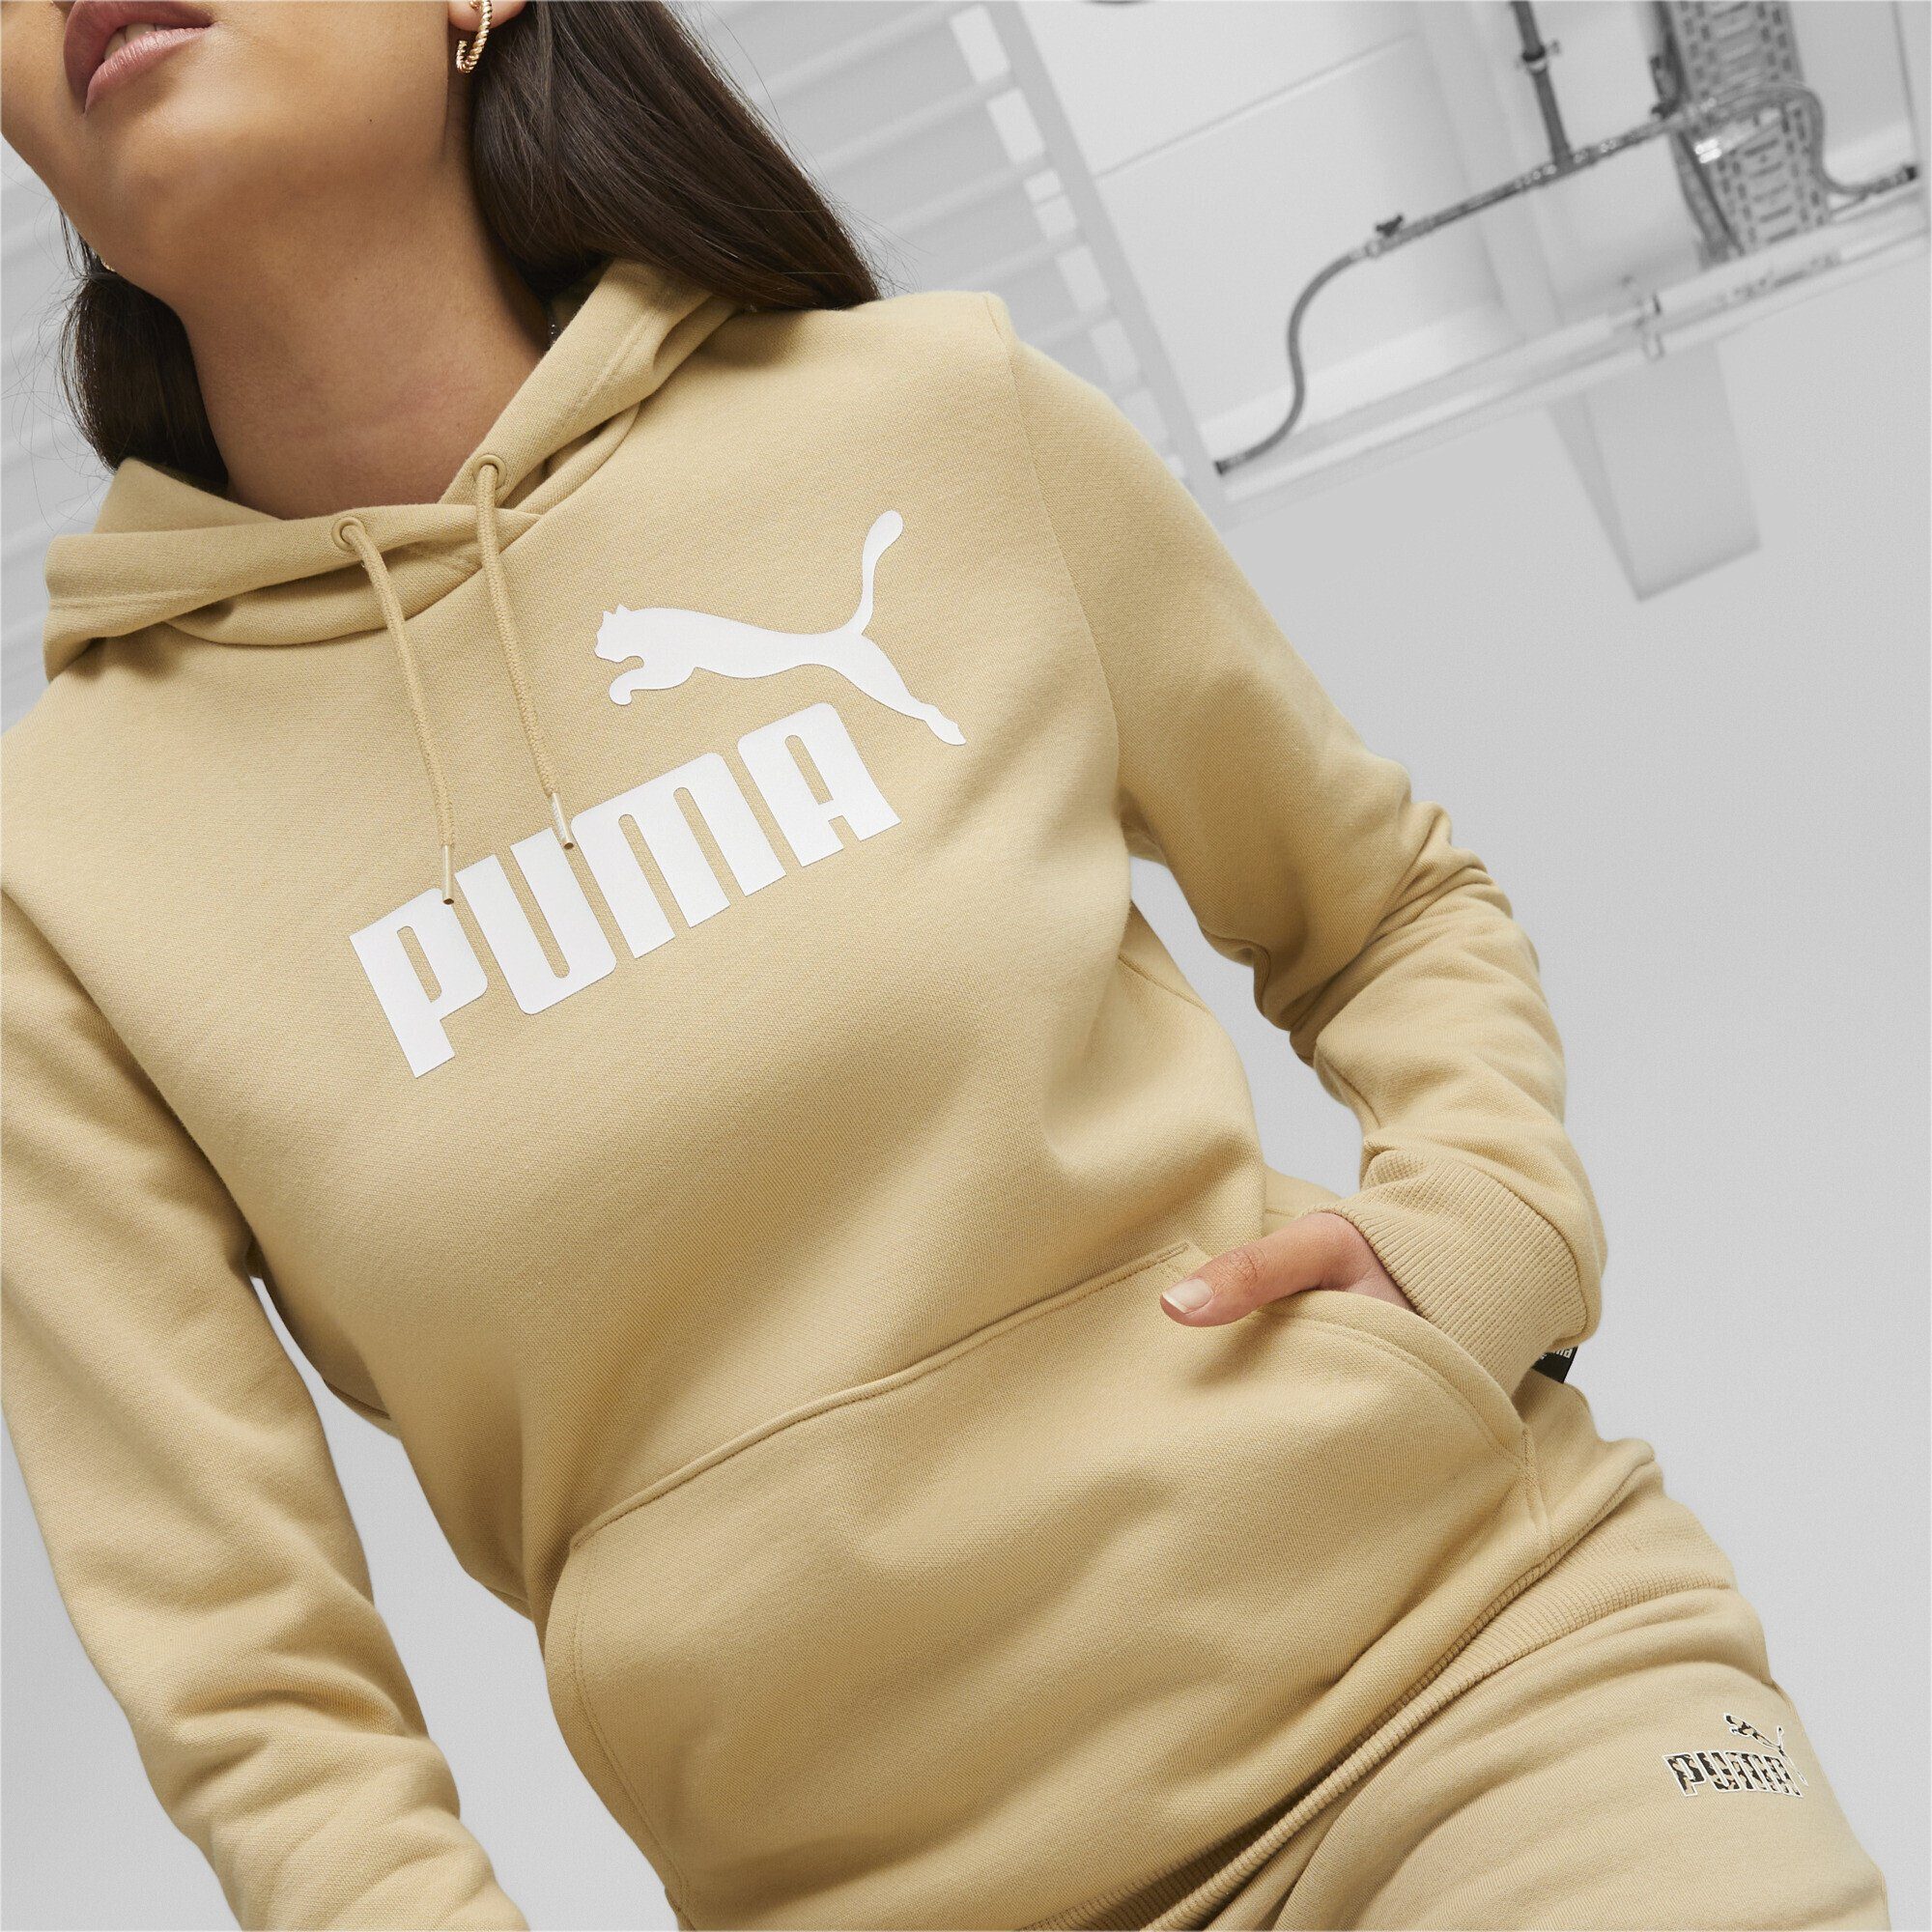 PUMA Sweatshirt Essentials Logo FL Dune Sand hoodie Damen Beige